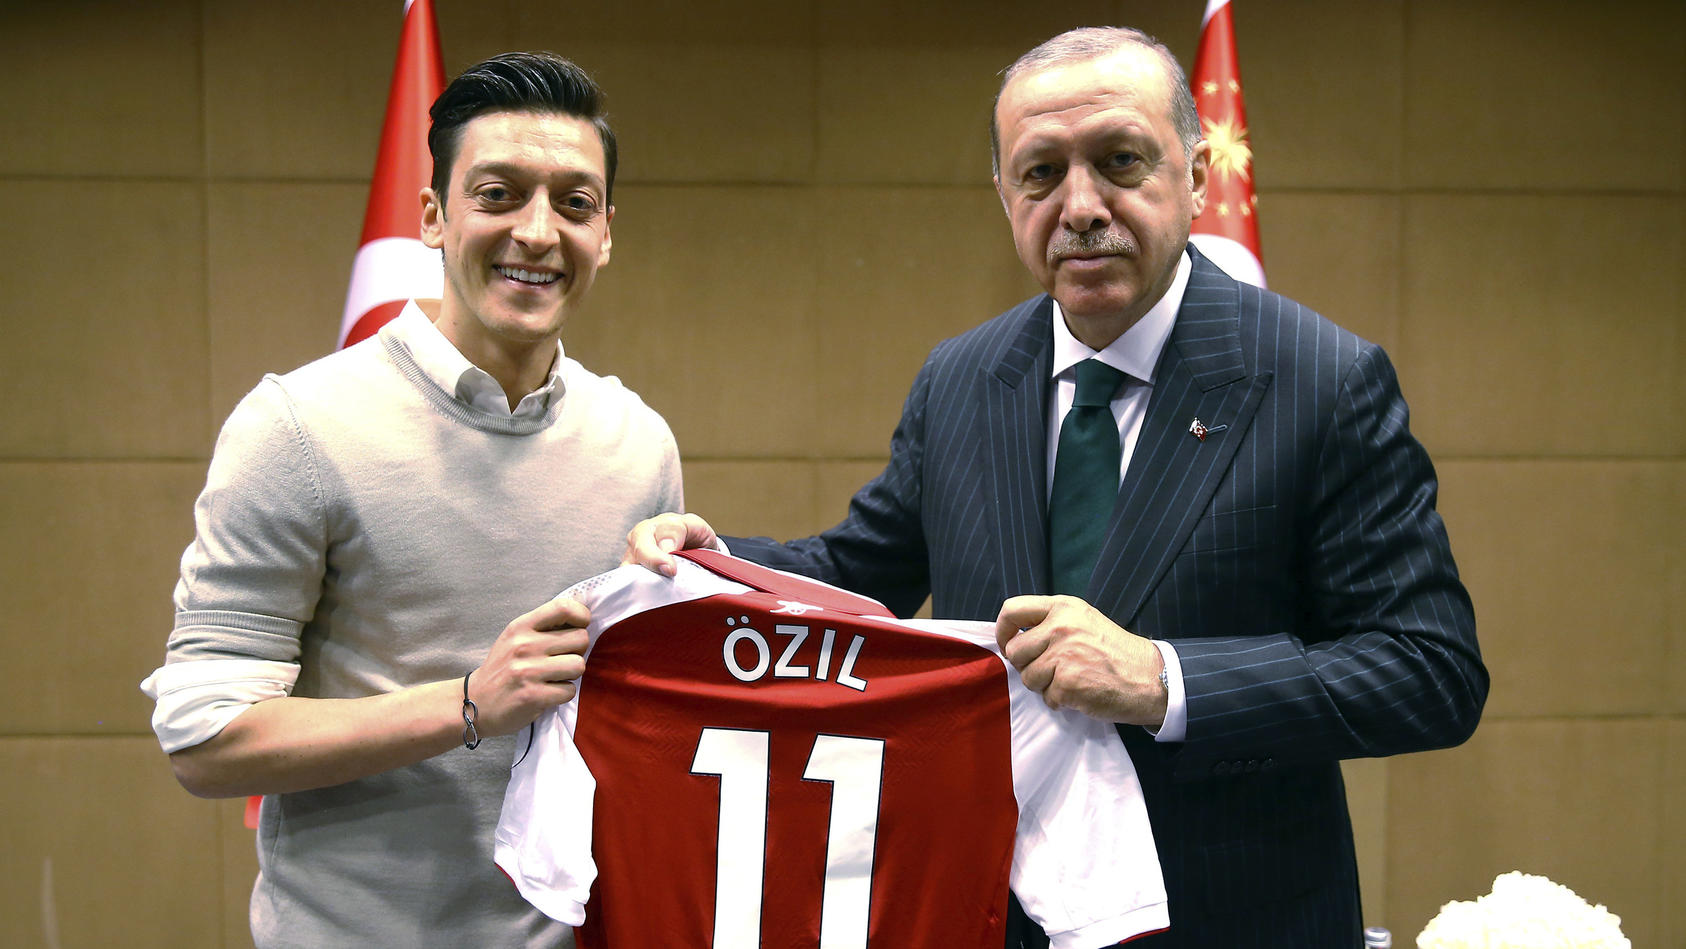 ARCHIV - 14.05.2018, Großbritannien, London: Recep Tayyip Erdogan, Staatspräsident der Türkei, hält zusammen mit Fußballspieler Mesut Özil vom englischen Premier League Verein FC Arsenal, ein Trikot von Özil. Ex-Nationalspieler Mesut Özil hat knapp 1